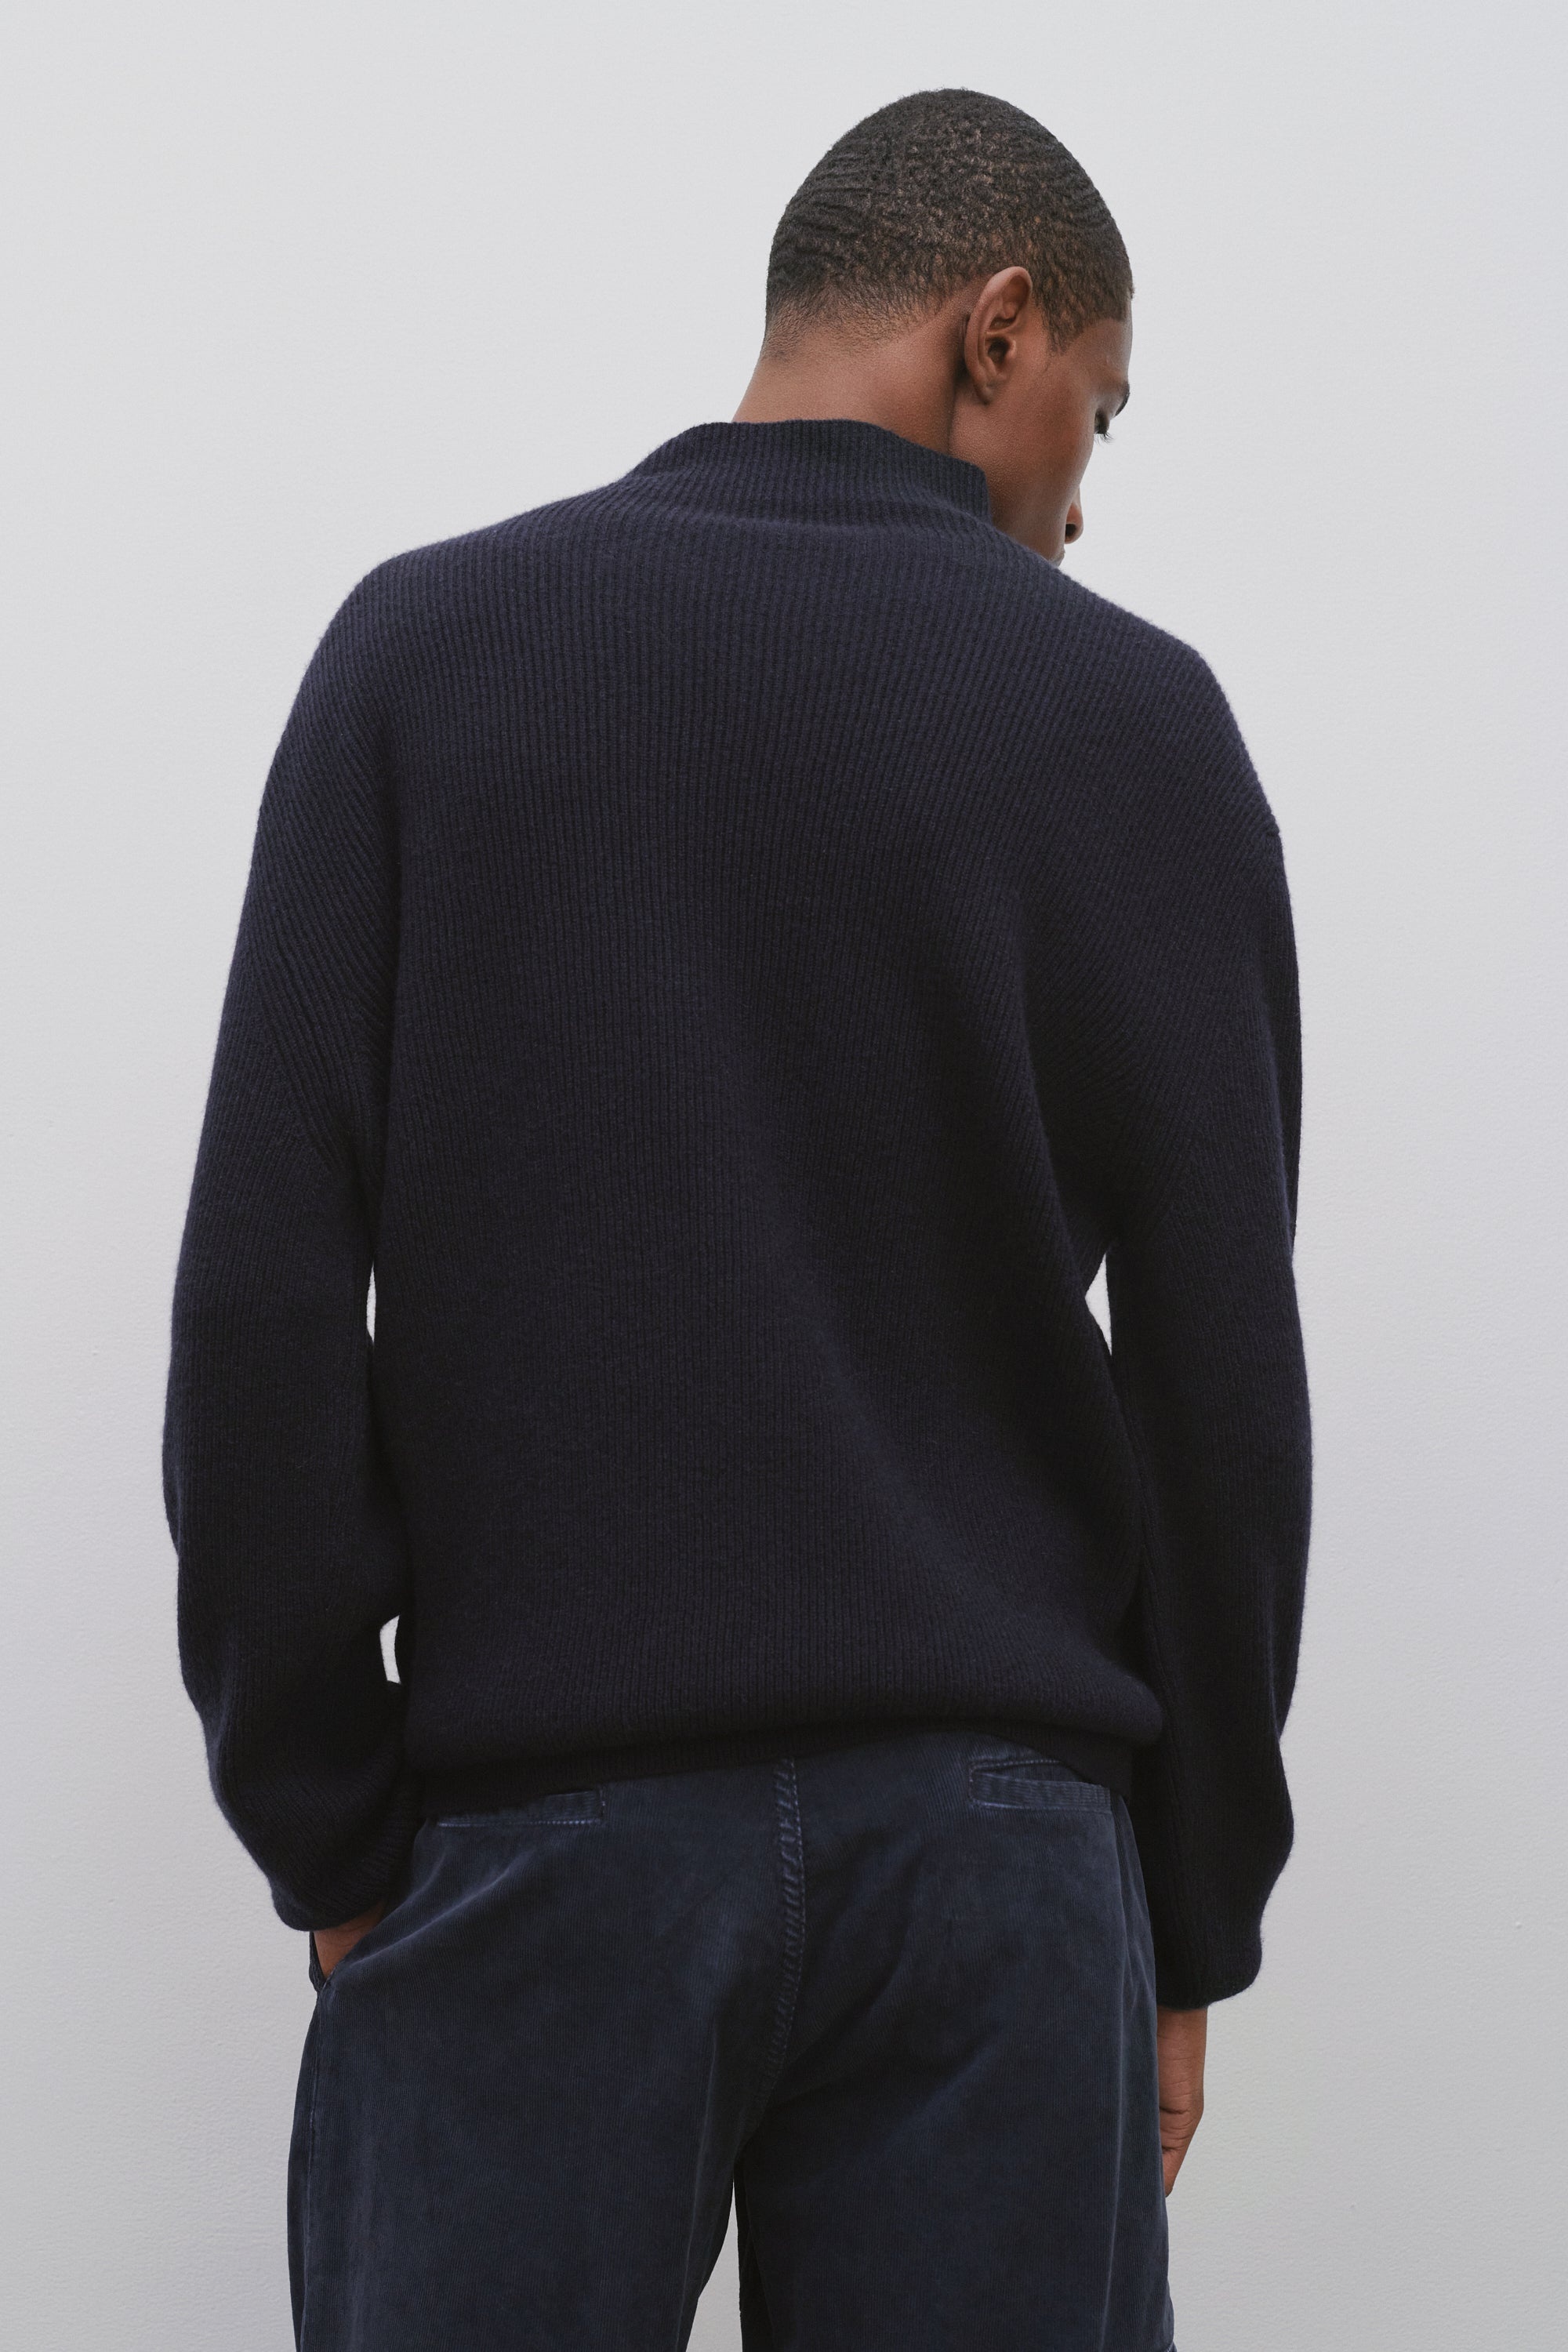 Daniel Sweater in Cashmere - 4